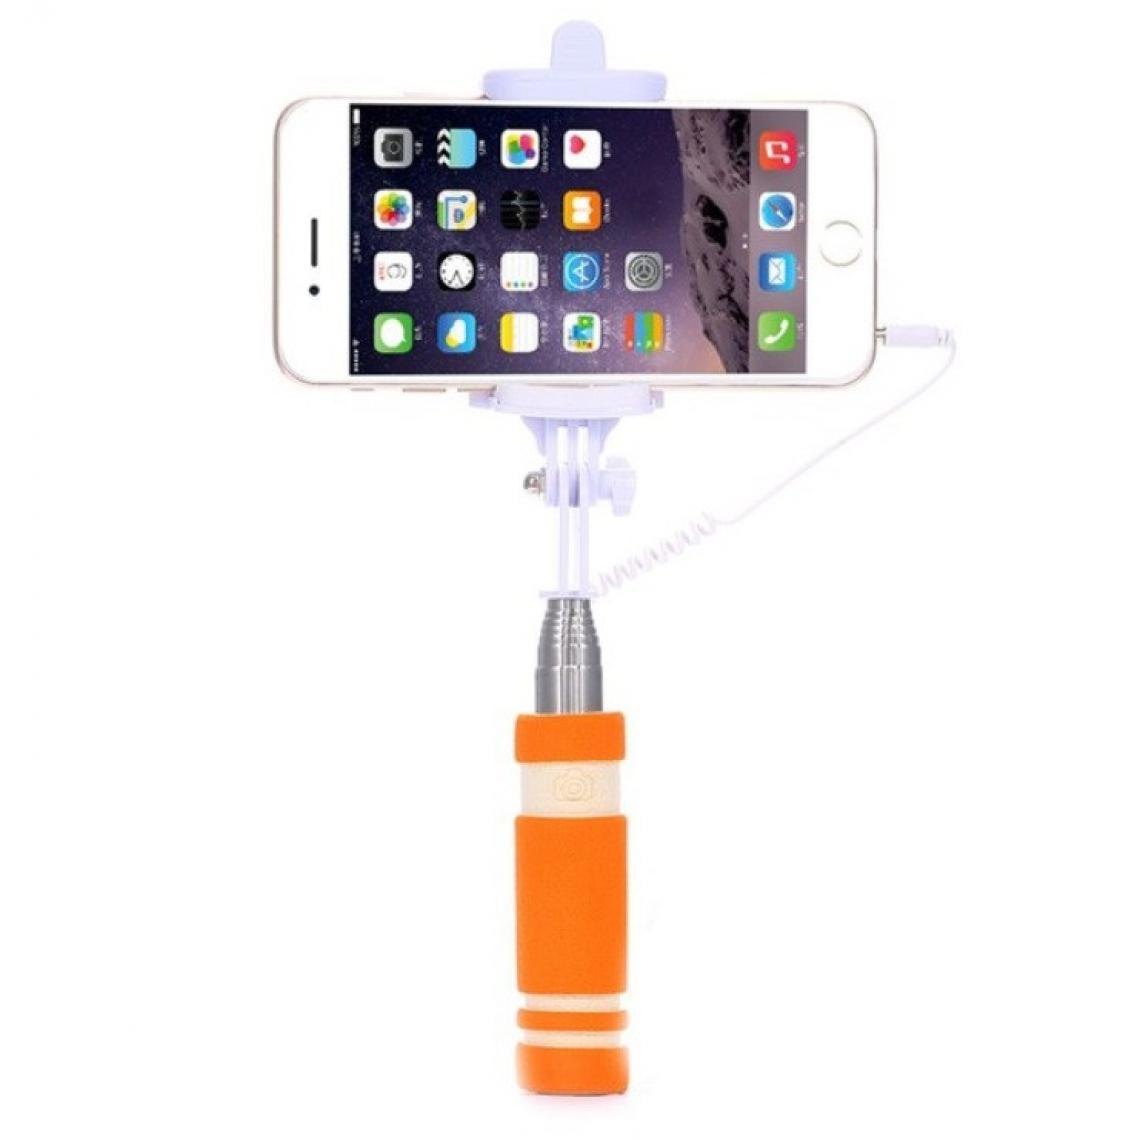 Shot - Mini Perche Selfie pour XIAOMI Mi 9 SE Smartphone avec Cable Jack Selfie Stick Android IOS Reglable Bouton Photo (ORANGE) - Autres accessoires smartphone